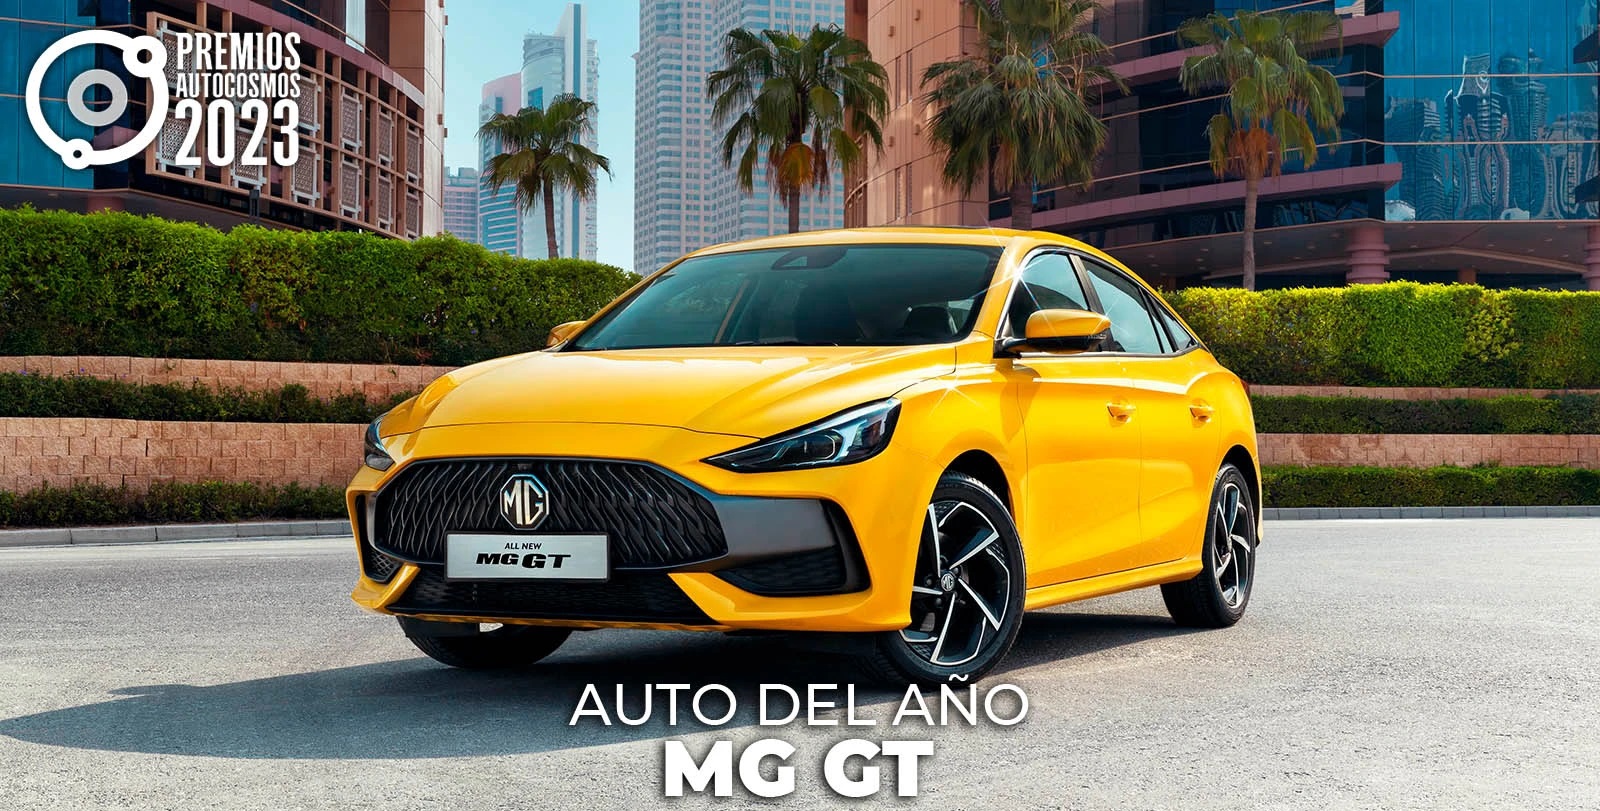 Foto de MG GT es elegido como el “Auto del Año” por los premios Autocosmos